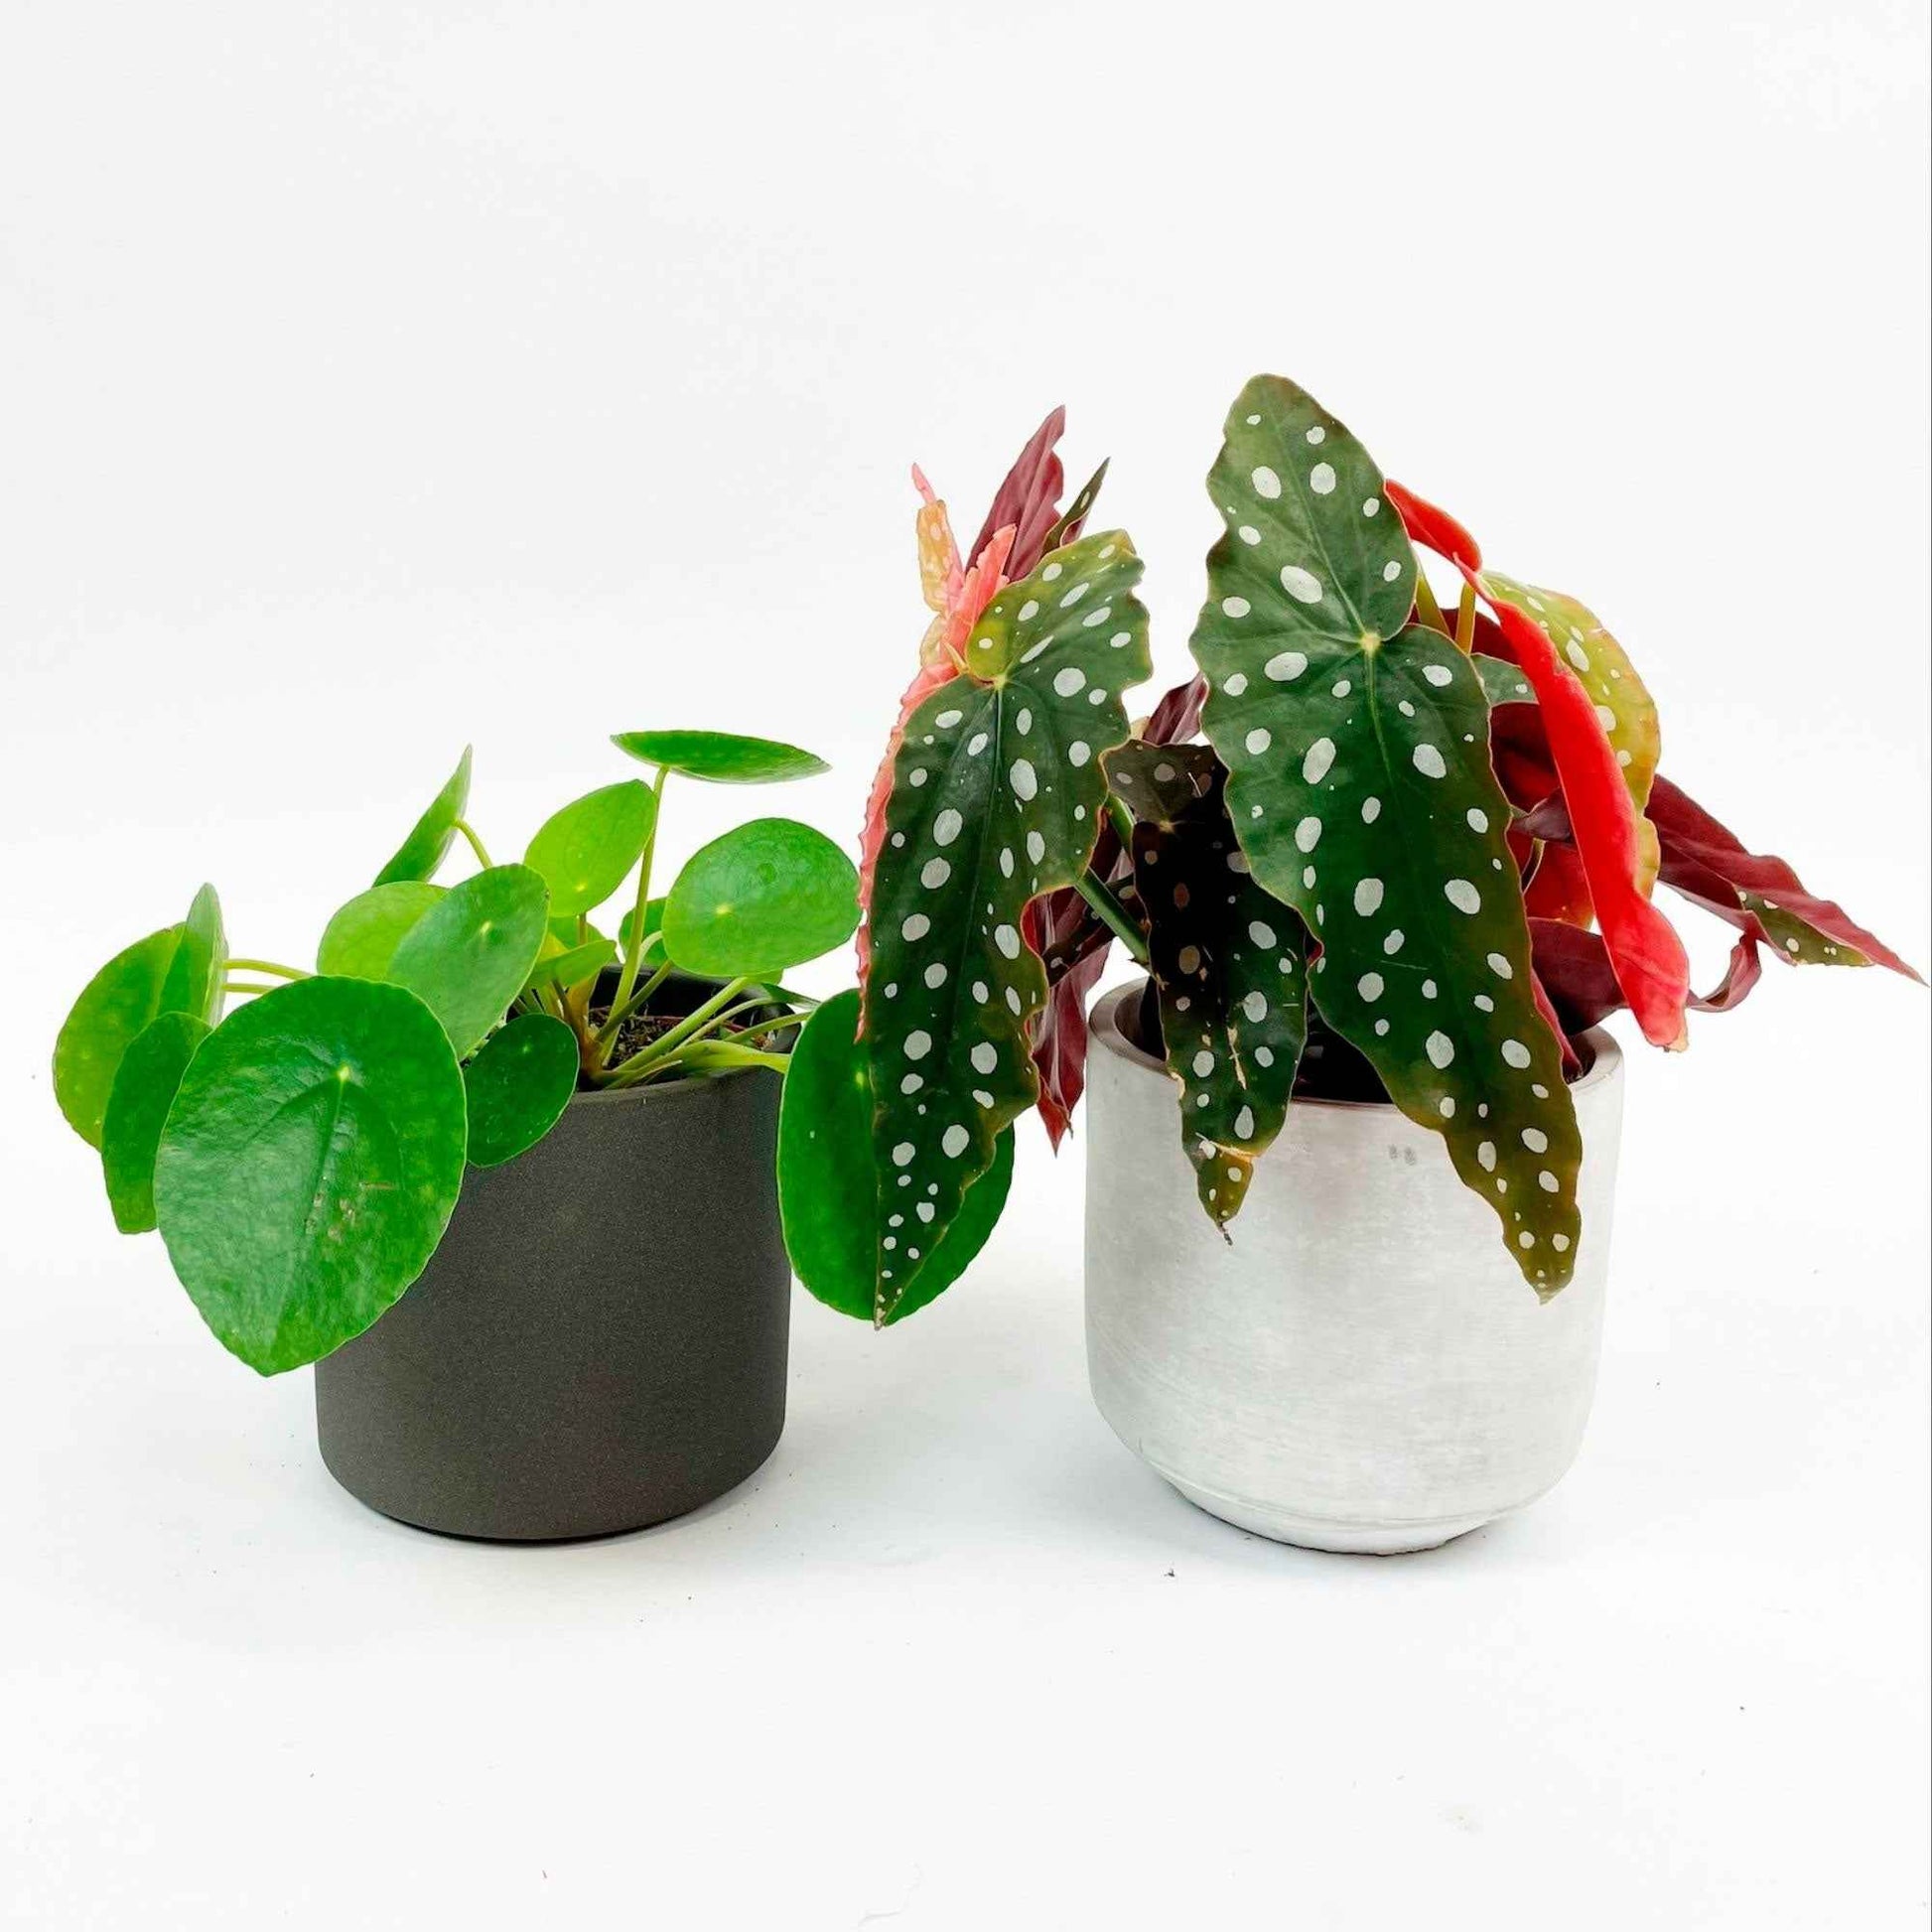 1x Forellenbegonie maculata + 1x Pfannkuchenpflanze, inkl. Ziertöpfe, grau - Grüne Zimmerpflanzen